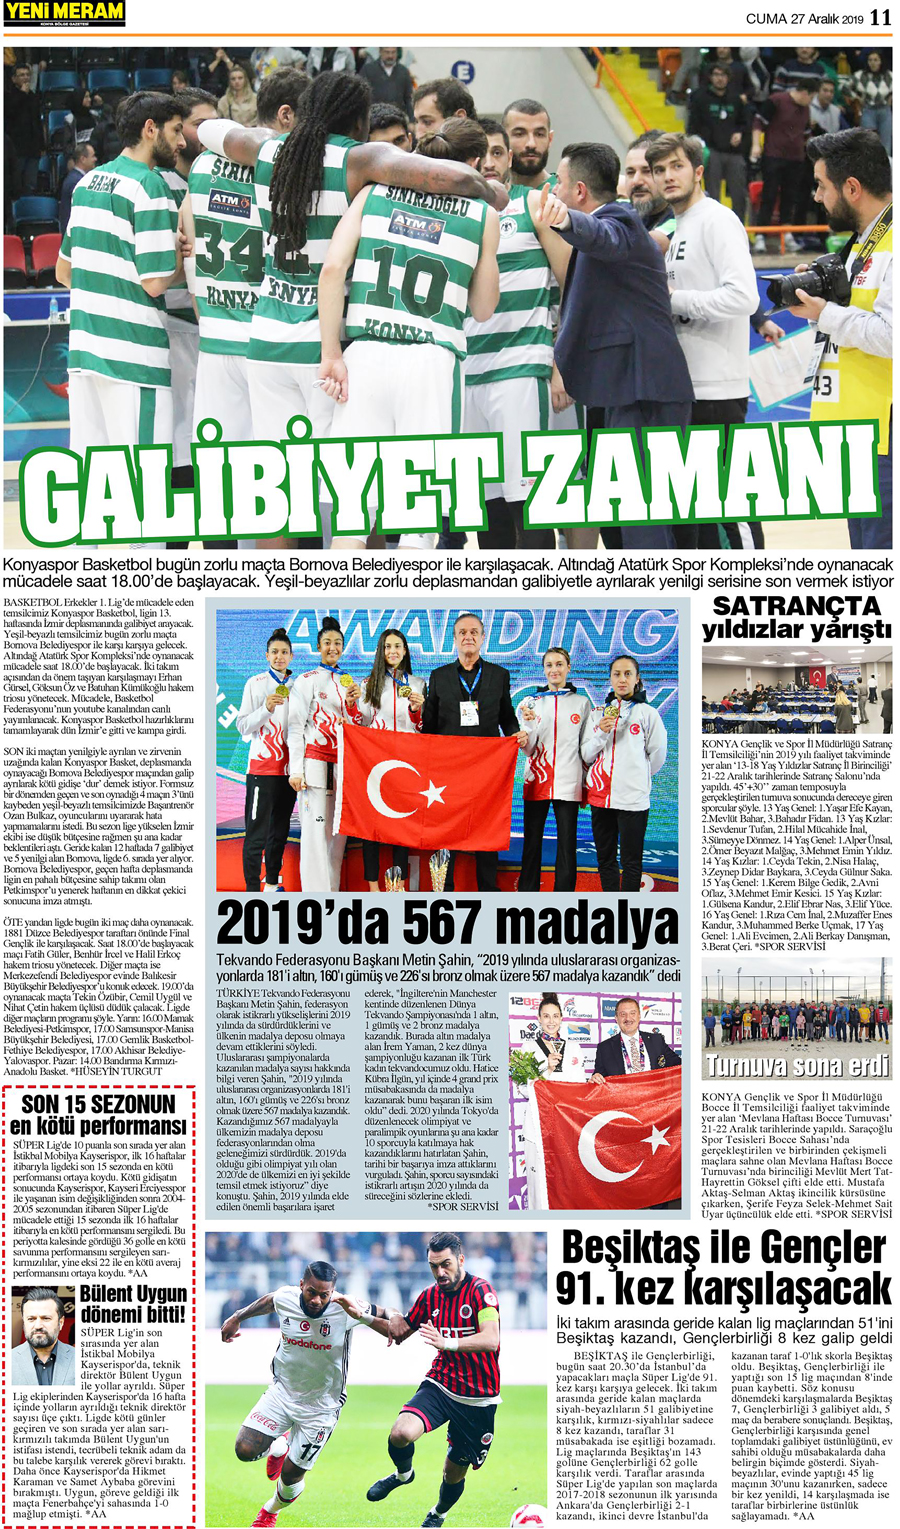 27 Aralık 2019 Yeni Meram Gazetesi